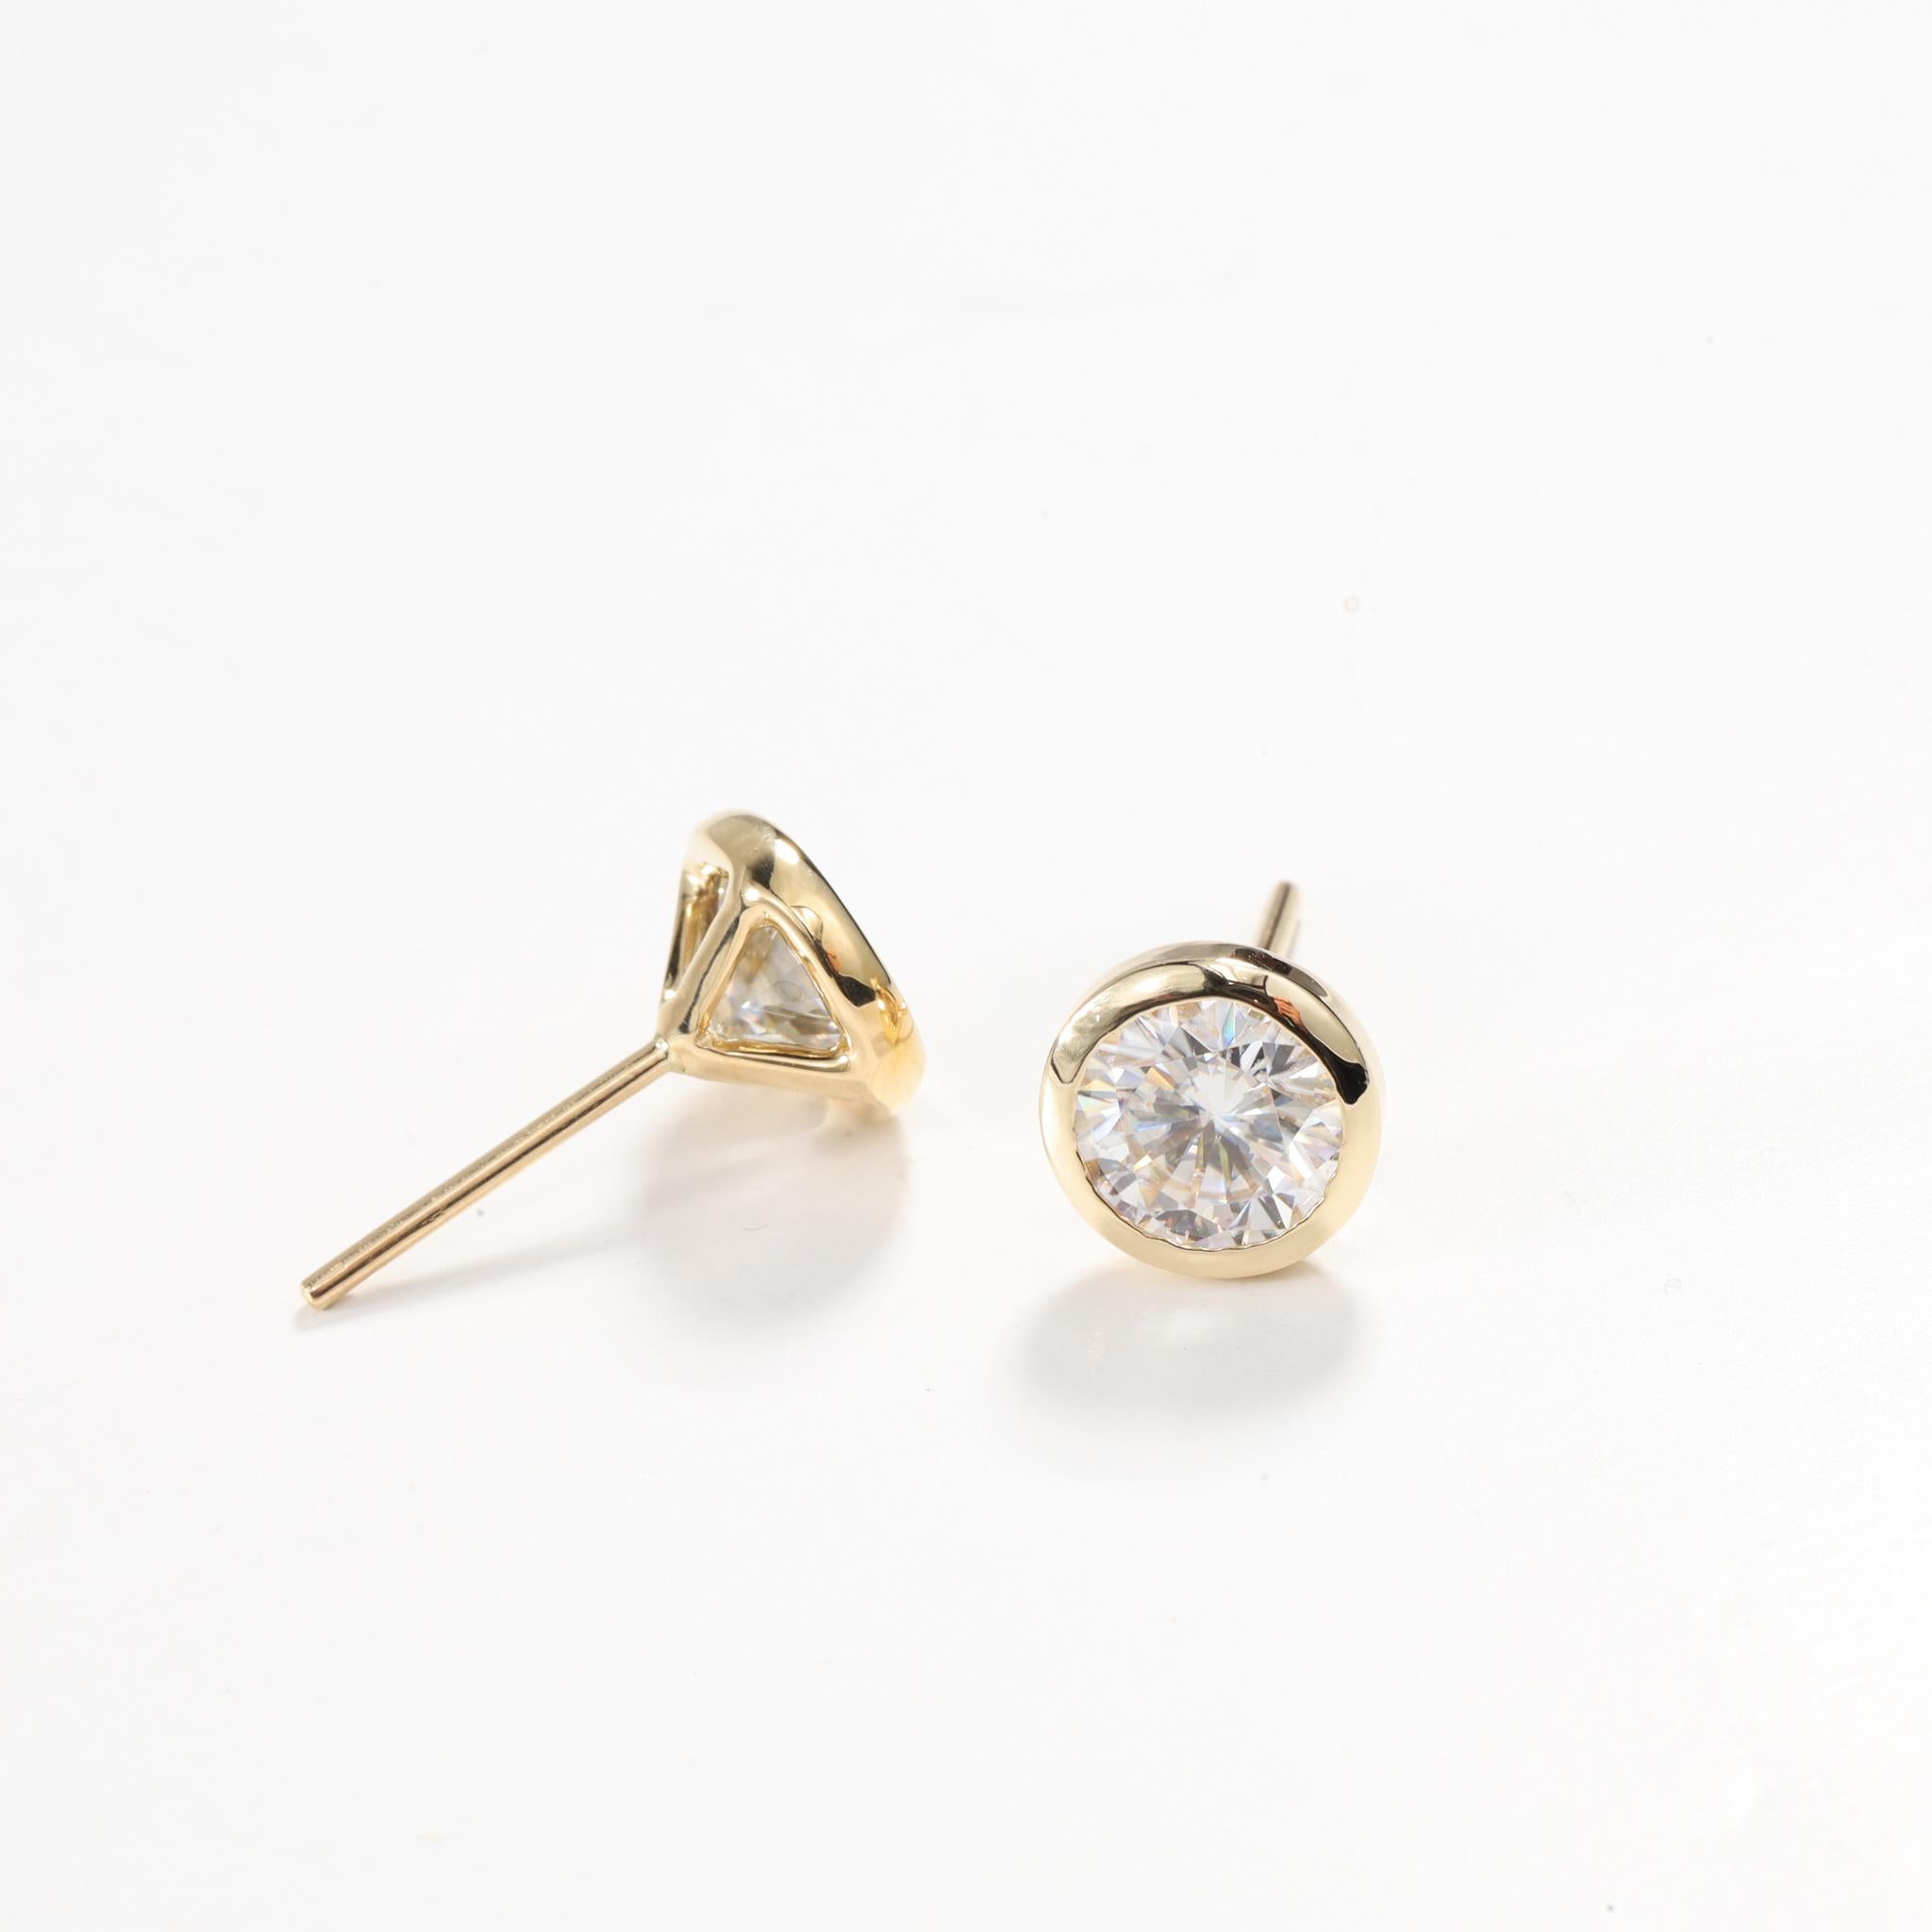 Boucles d'oreilles en diamant Art déco certifié par le GIA, 2 carats, taille ronde 

Disponible en or jaune 18 carats.

Le même design peut être réalisé avec d'autres pierres précieuses sur demande.

Détails du produit :

- Or massif

- environ 2